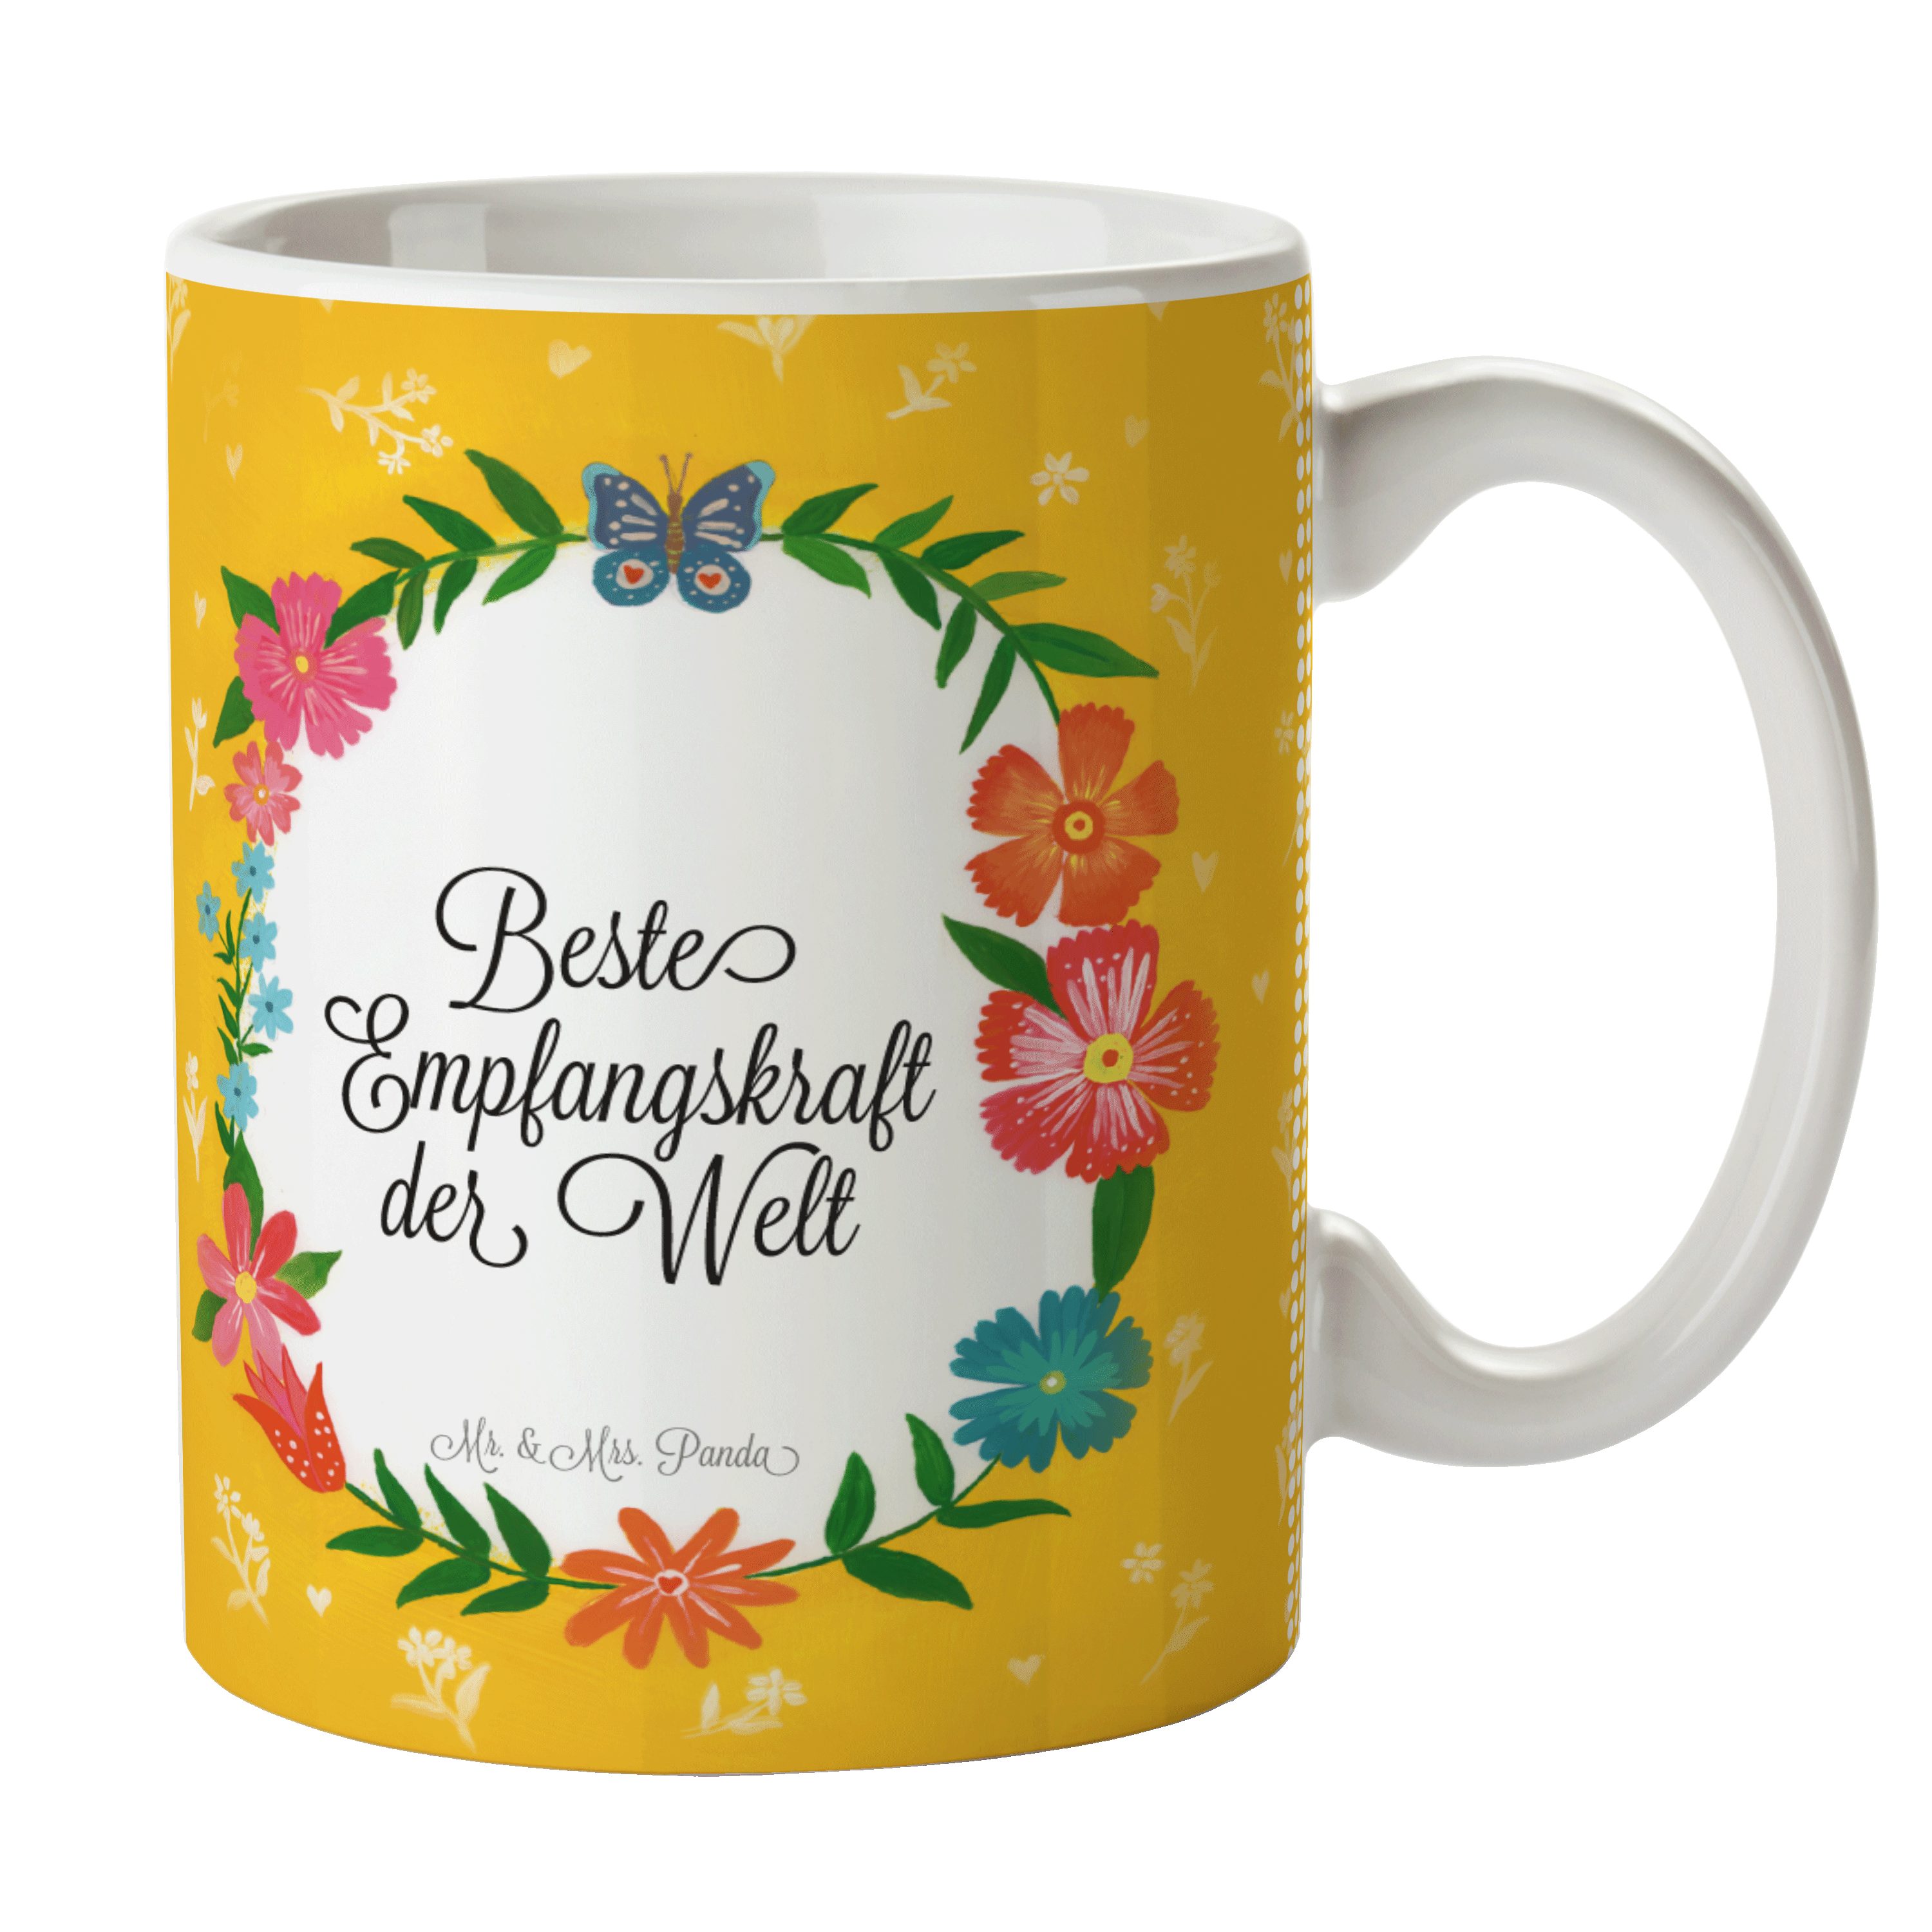 Mr. & Mrs. Panda Tasse Empfangskraft - Geschenk, Gratulation, Kaffeebecher, Geschenk Tasse, Keramik